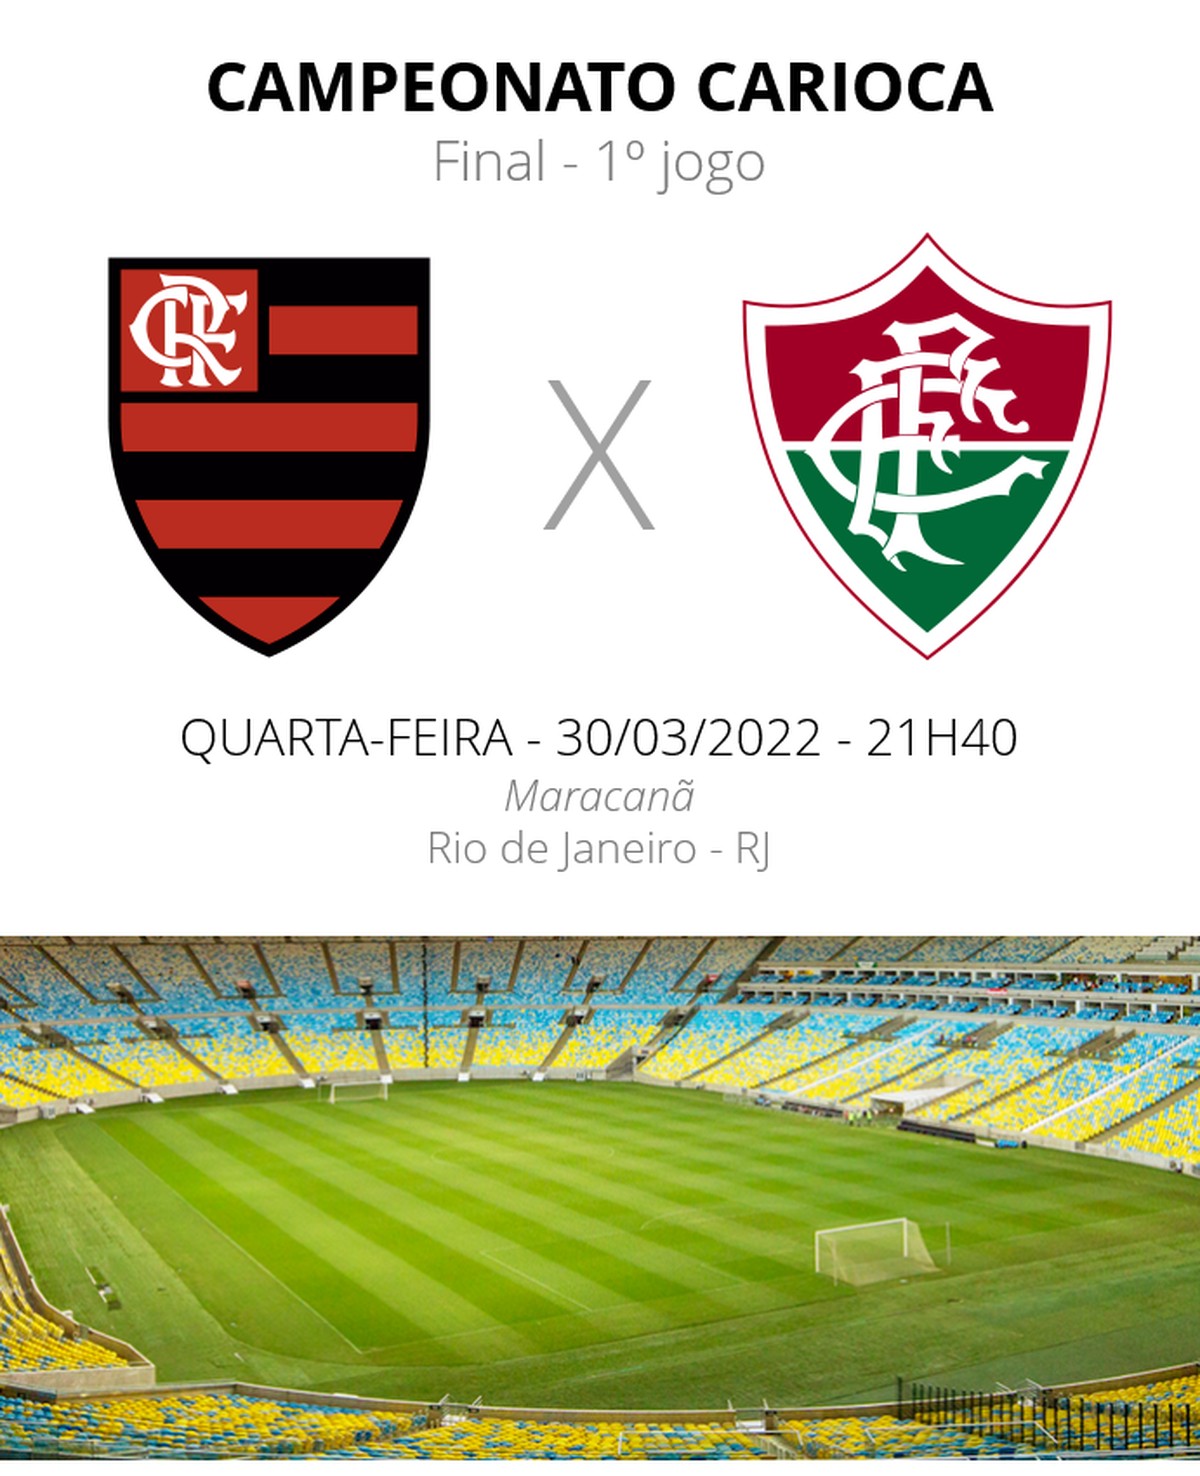 Onde assistir o Flamengo no Carioca 2022?